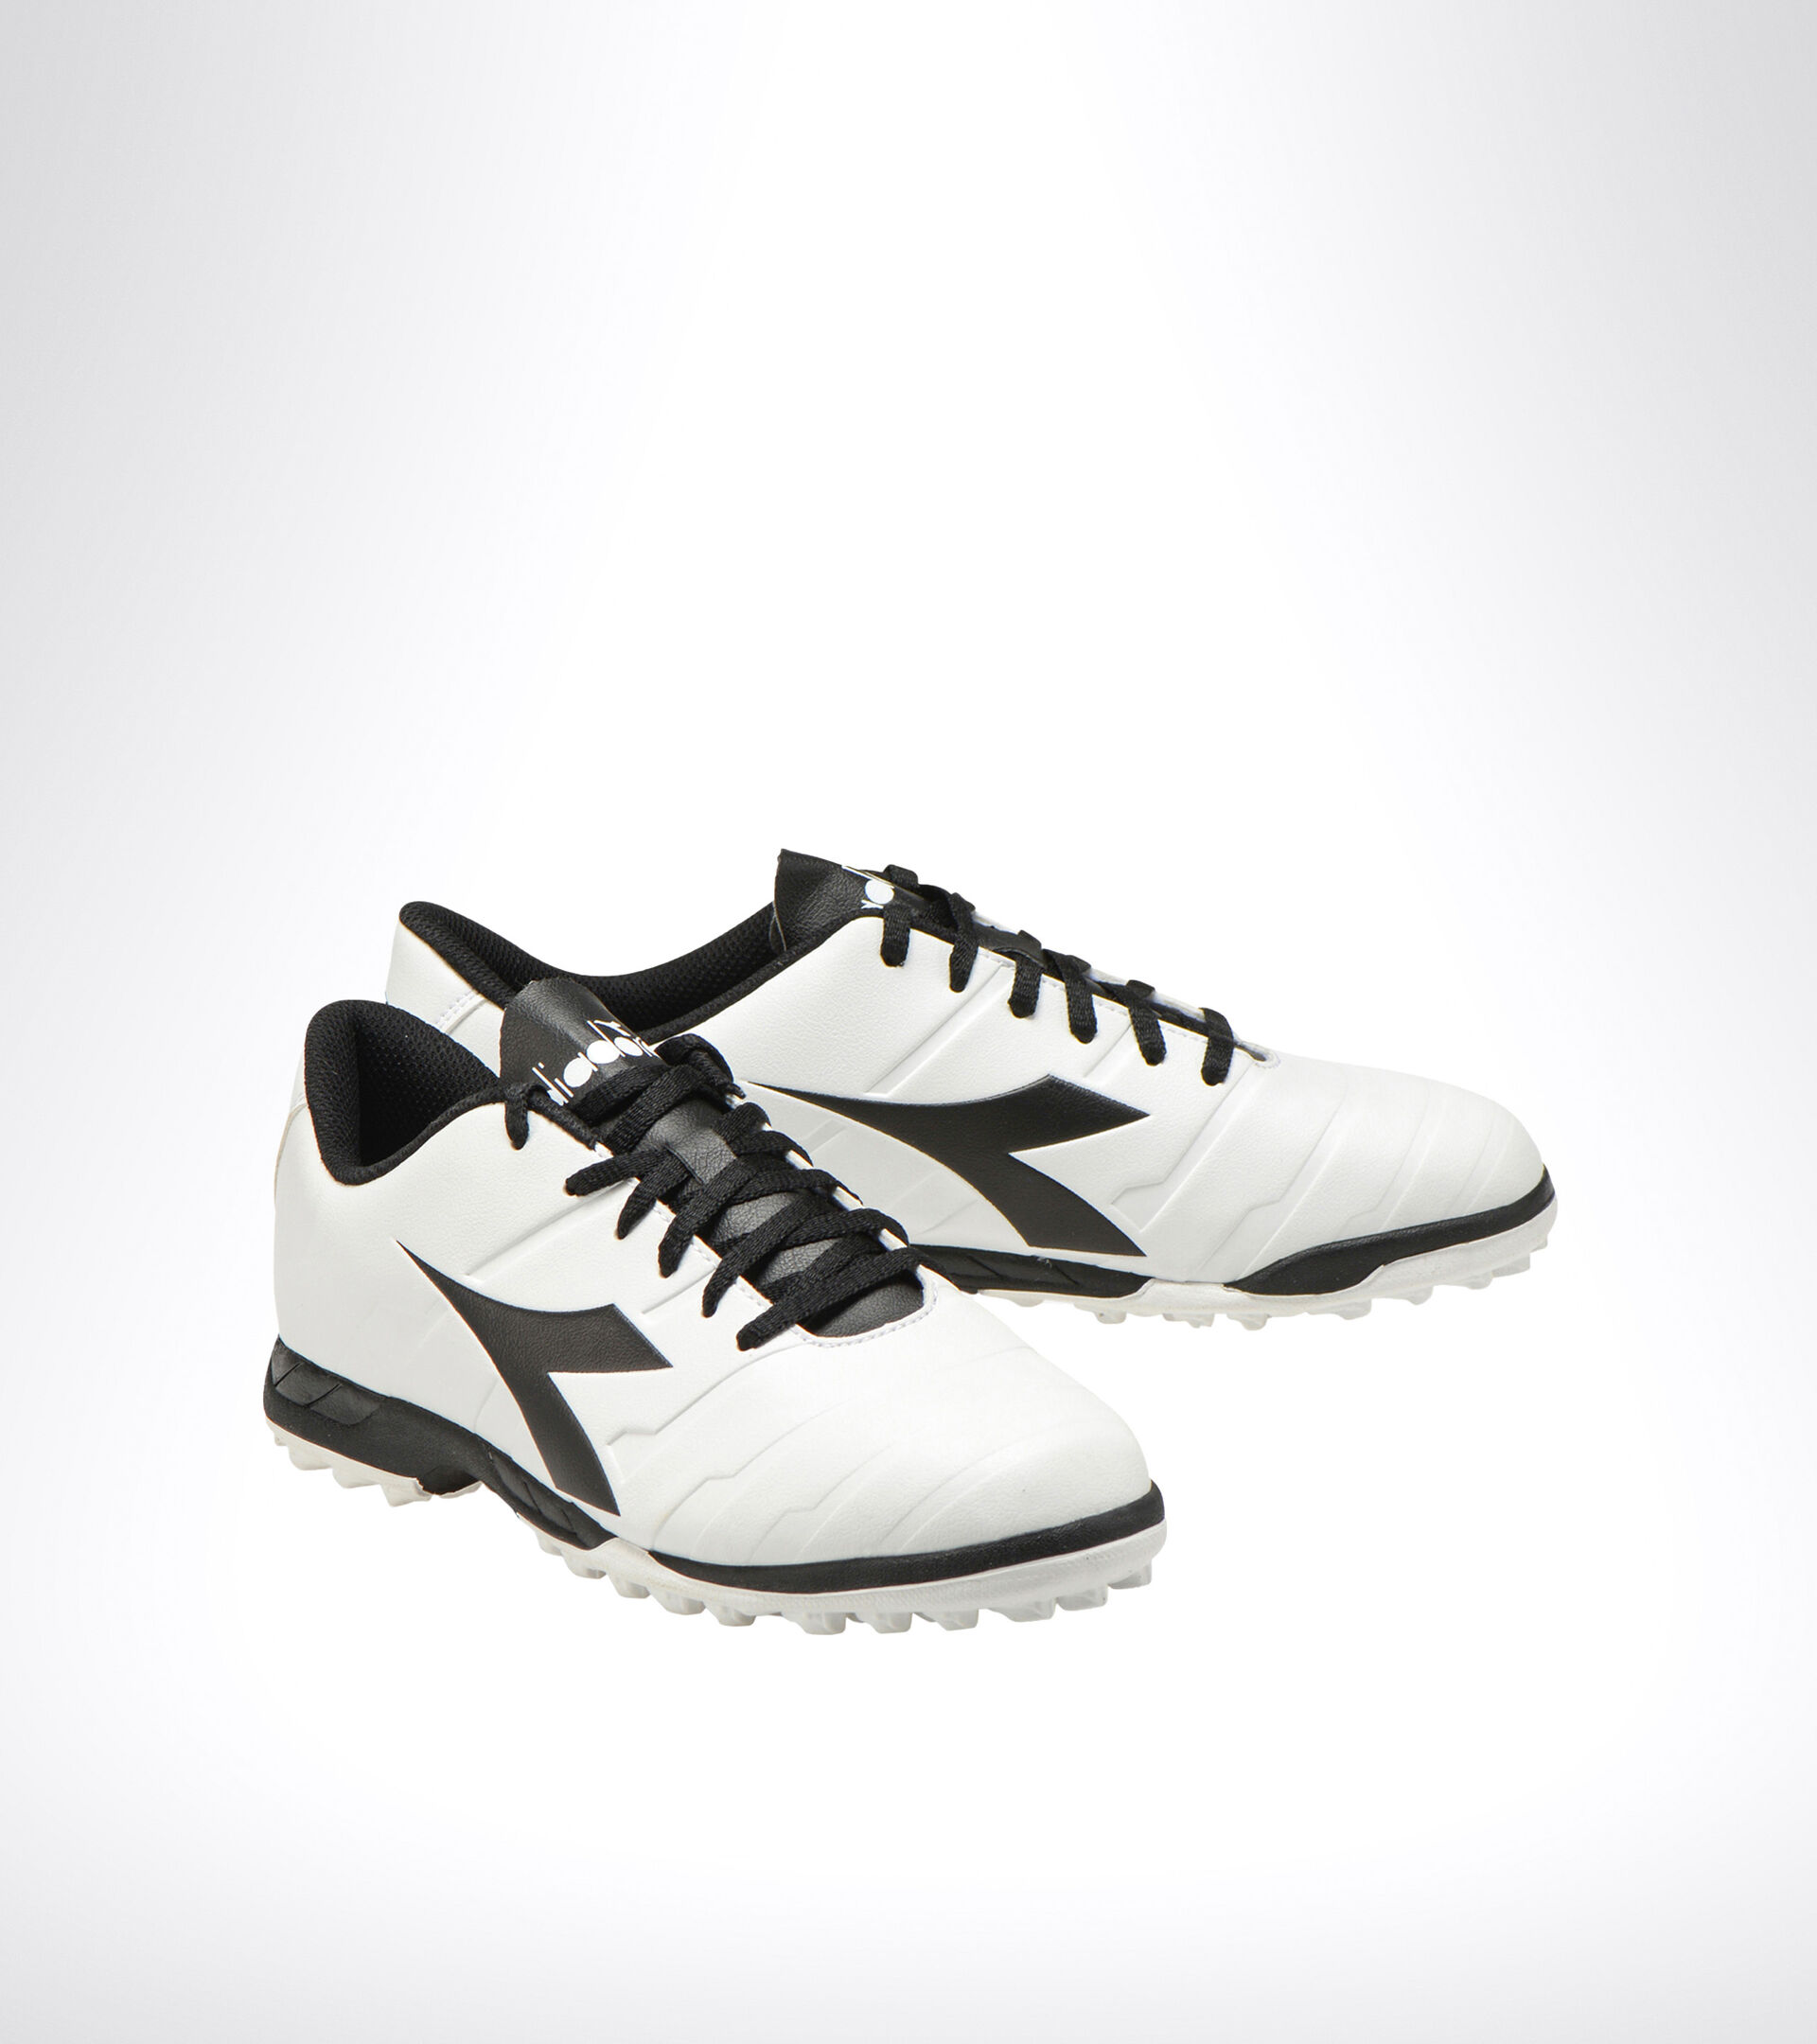 Chaussures de football pour terrains durs ou gazon synthétique PICHICHI 3 TF BLANC/NOIR (C0351). - Diadora